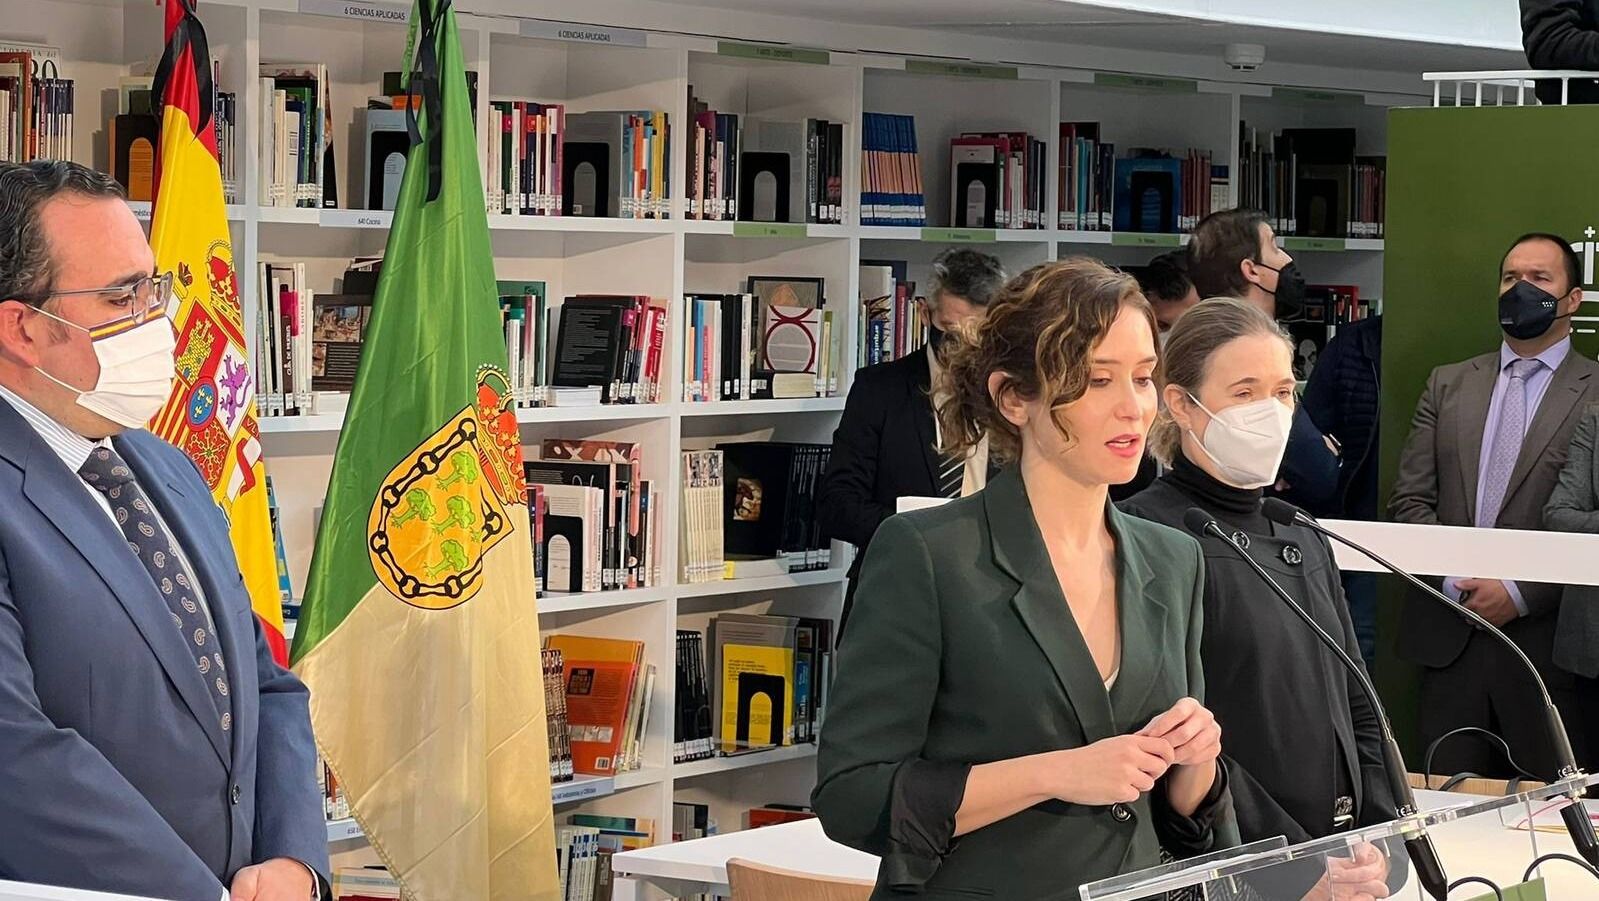 Díaz Ayuso inaugura la nueva biblioteca Princesa Doña Leonor de Boadilla entre una gran expectación popular y mediática